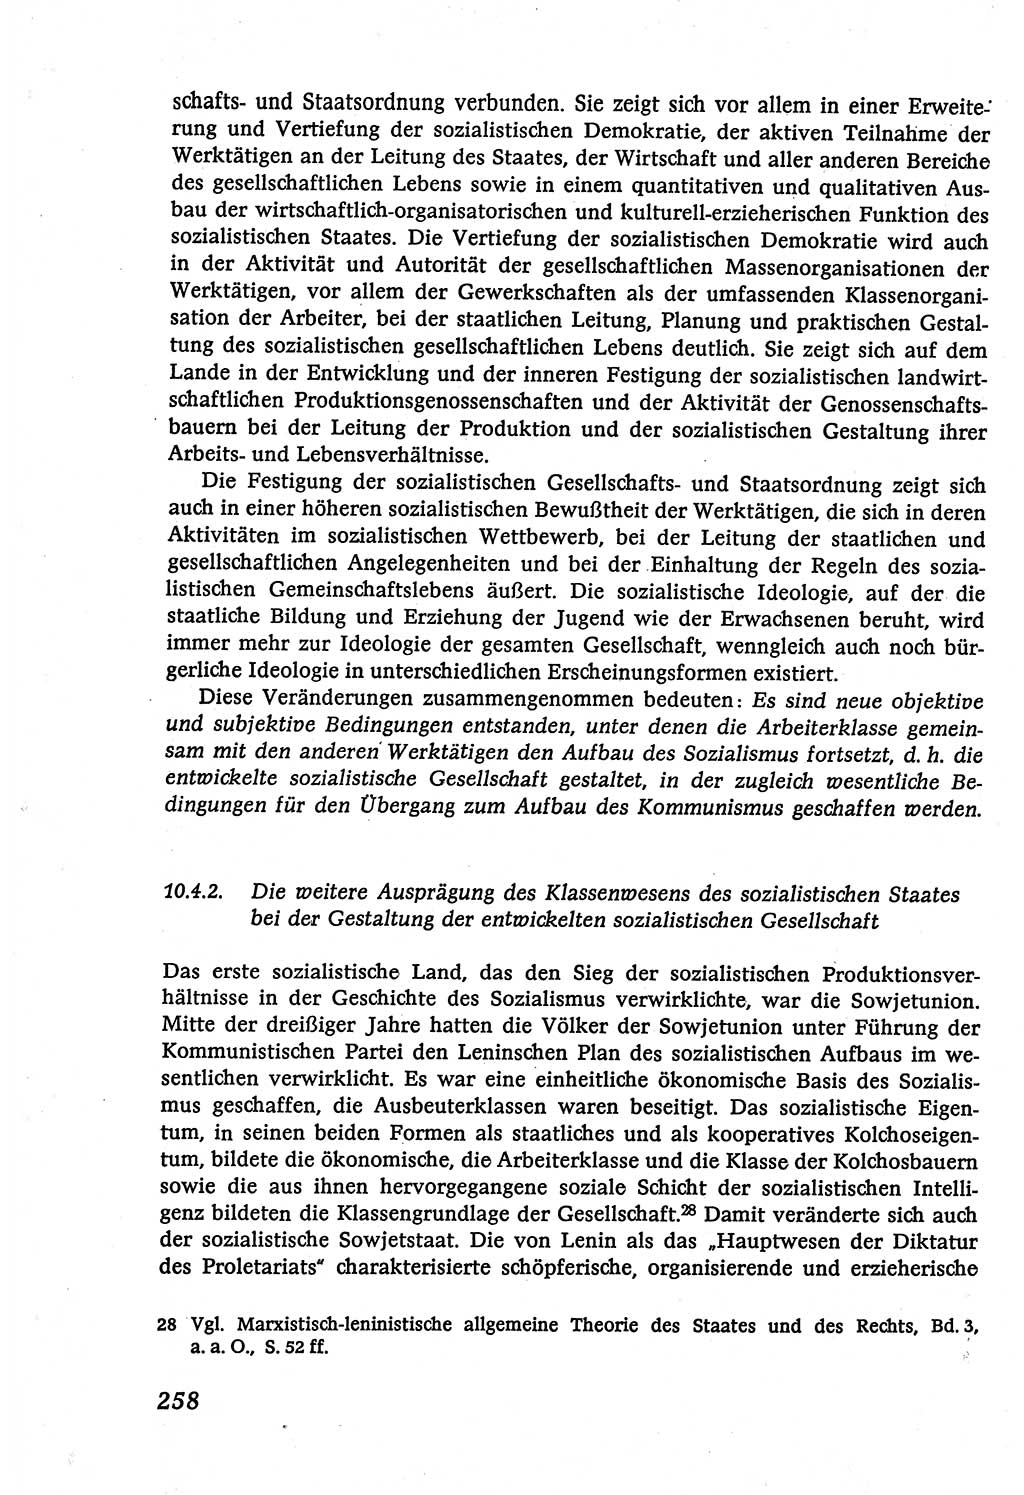 Marxistisch-leninistische (ML) Staats- und Rechtstheorie [Deutsche Demokratische Republik (DDR)], Lehrbuch 1980, Seite 258 (ML St.-R.-Th. DDR Lb. 1980, S. 258)